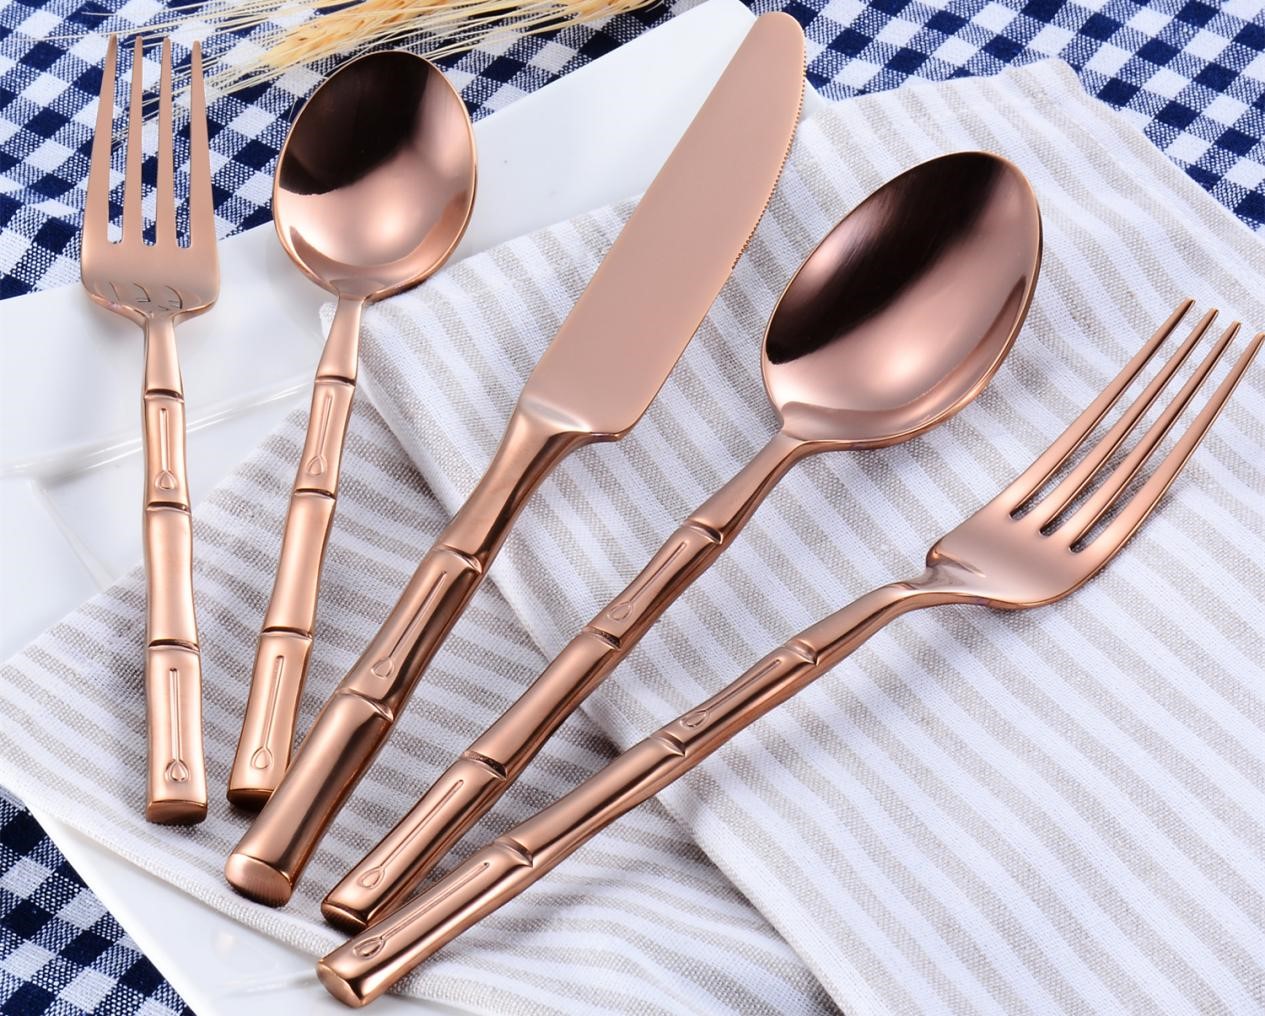 gold wedding cutlery set 6